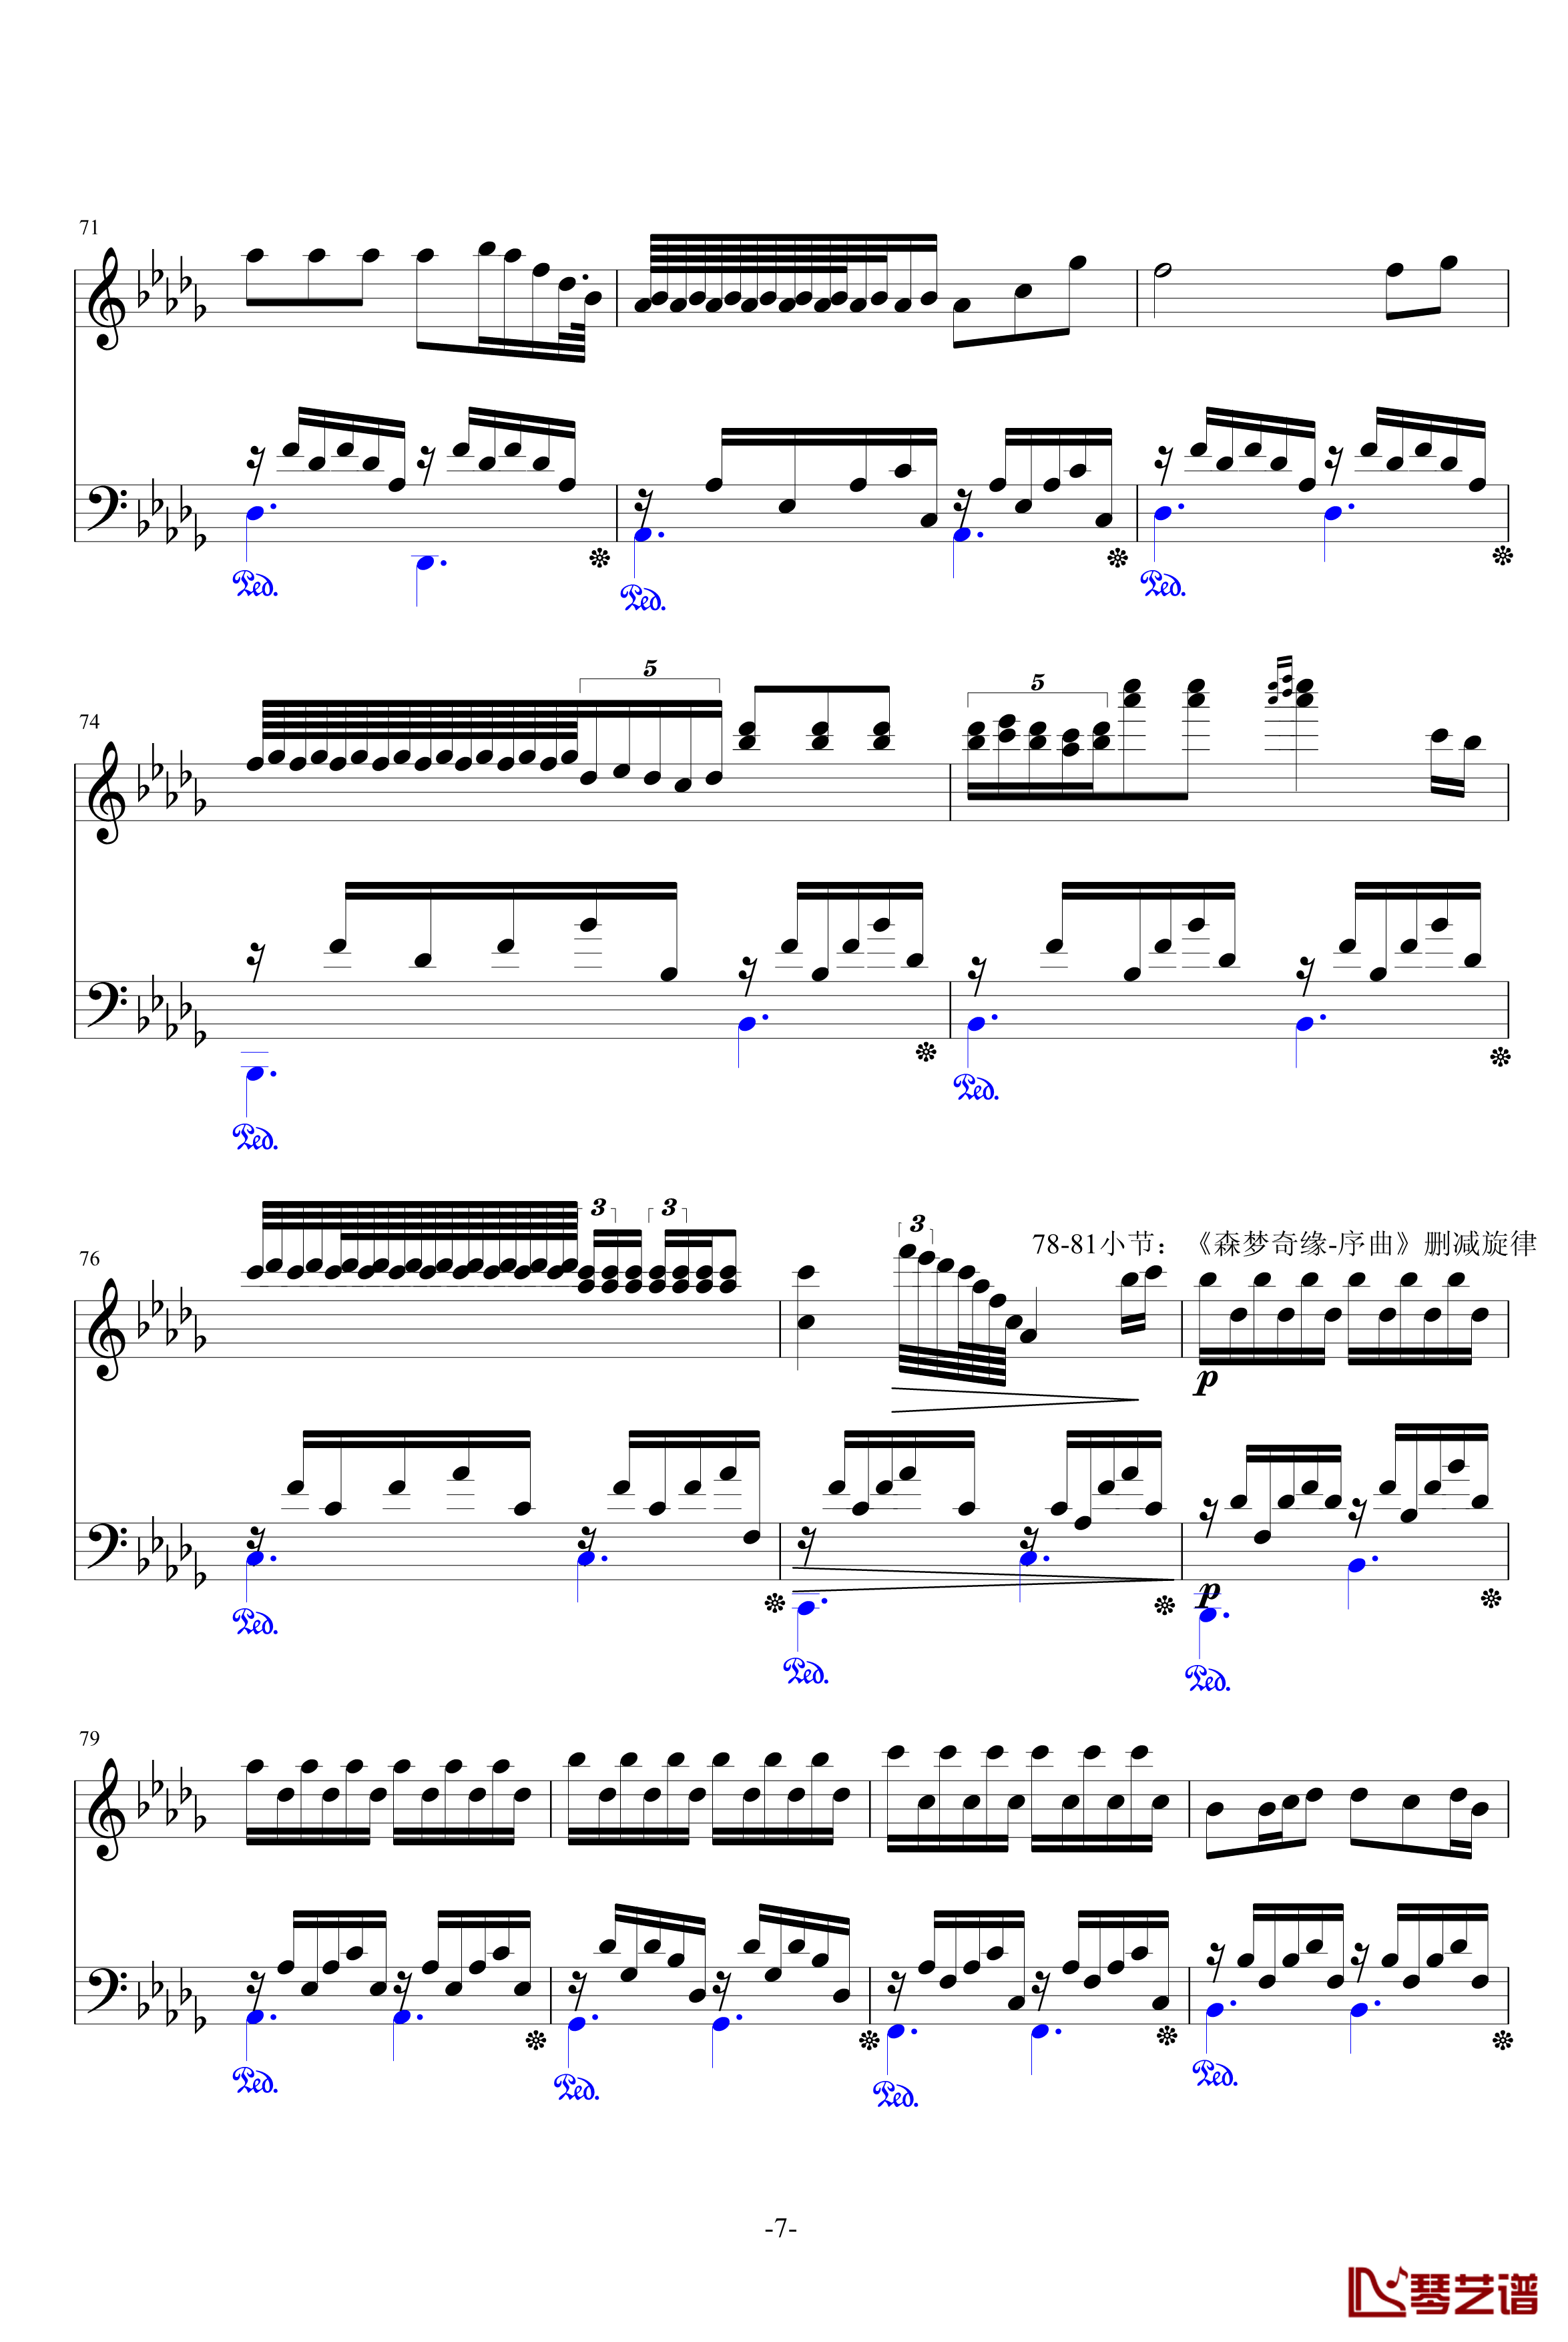 降D大调夜曲钢琴谱-遗弃的旋律-升c小调7